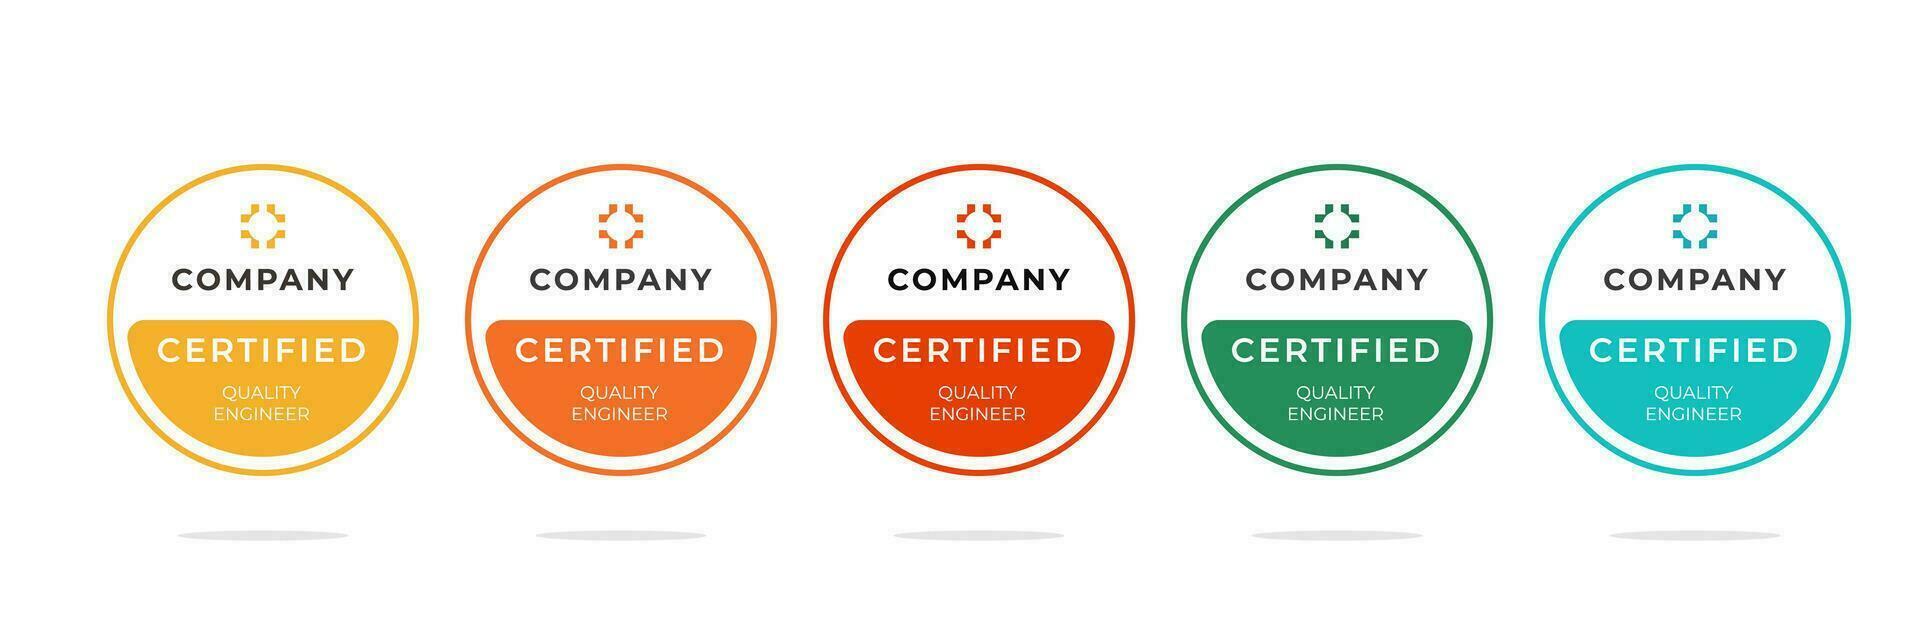 digital certificado Insignia diseño para técnico profesionales quien tener exitosamente pasado un Certificación examen. vector ilustración